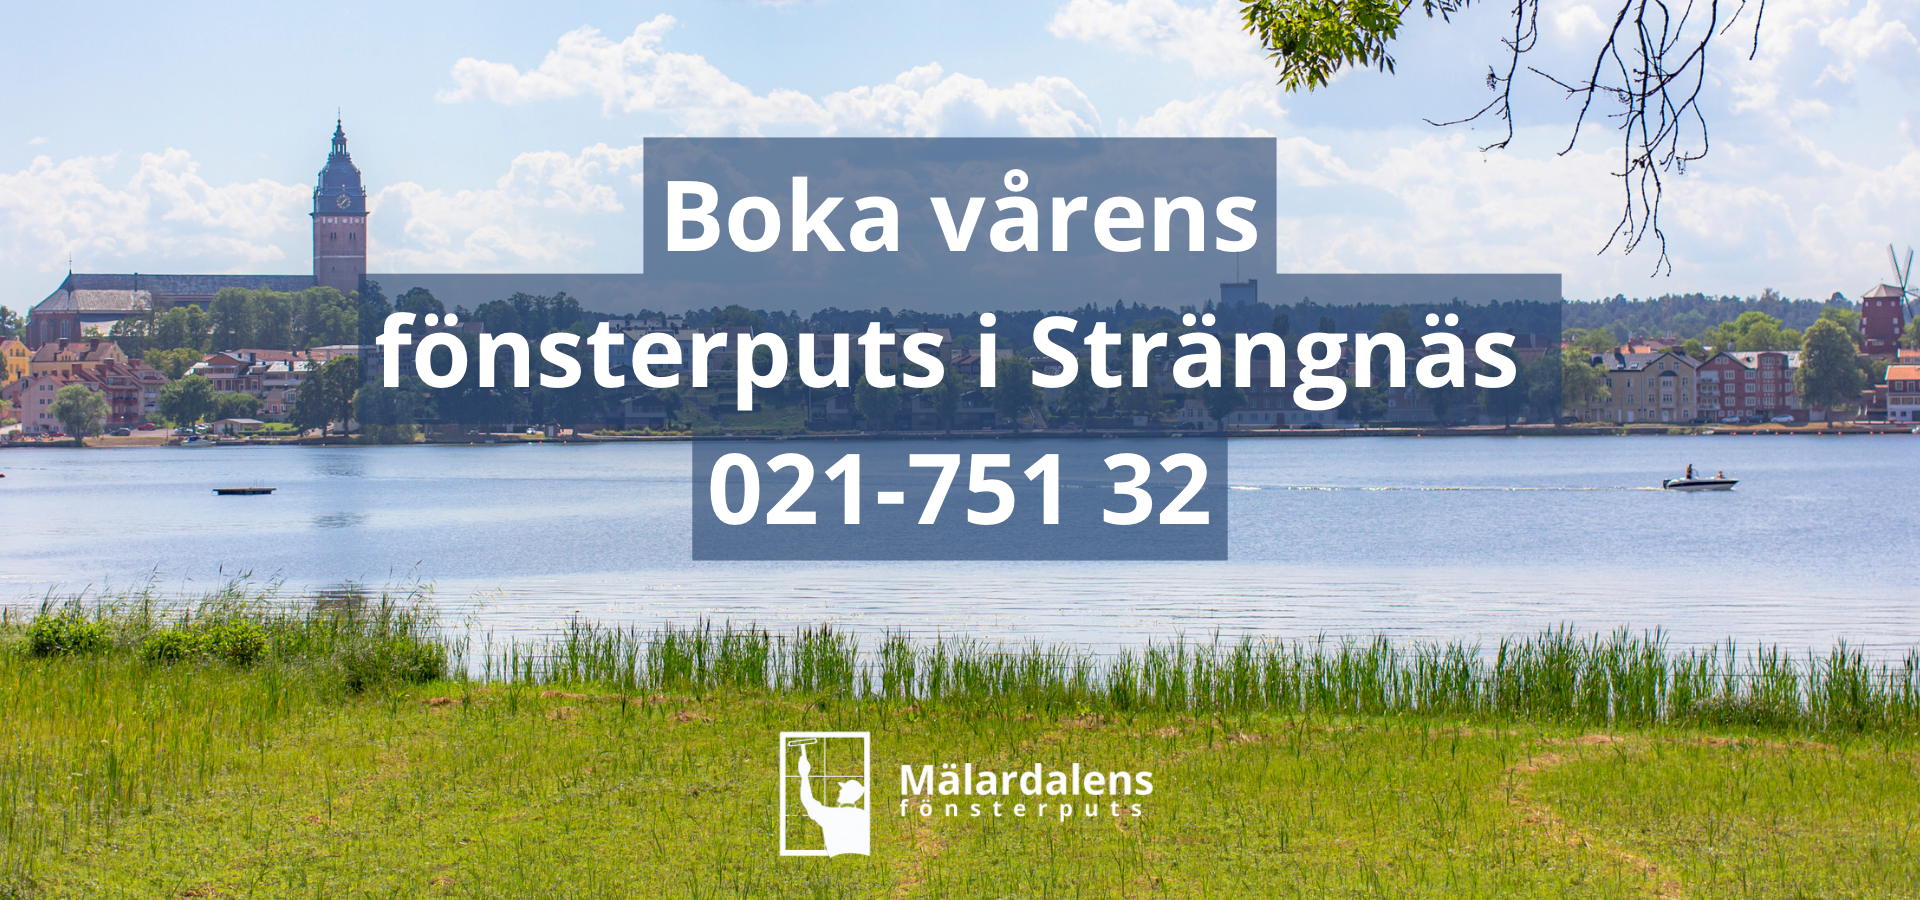 Uppmaning att boka vårens fönsterputs i Strängnäs. Boka en lokal aktör som Mälardalens Fönsterputs för att få bästa service. Bra priser och proffsigt bemötande.